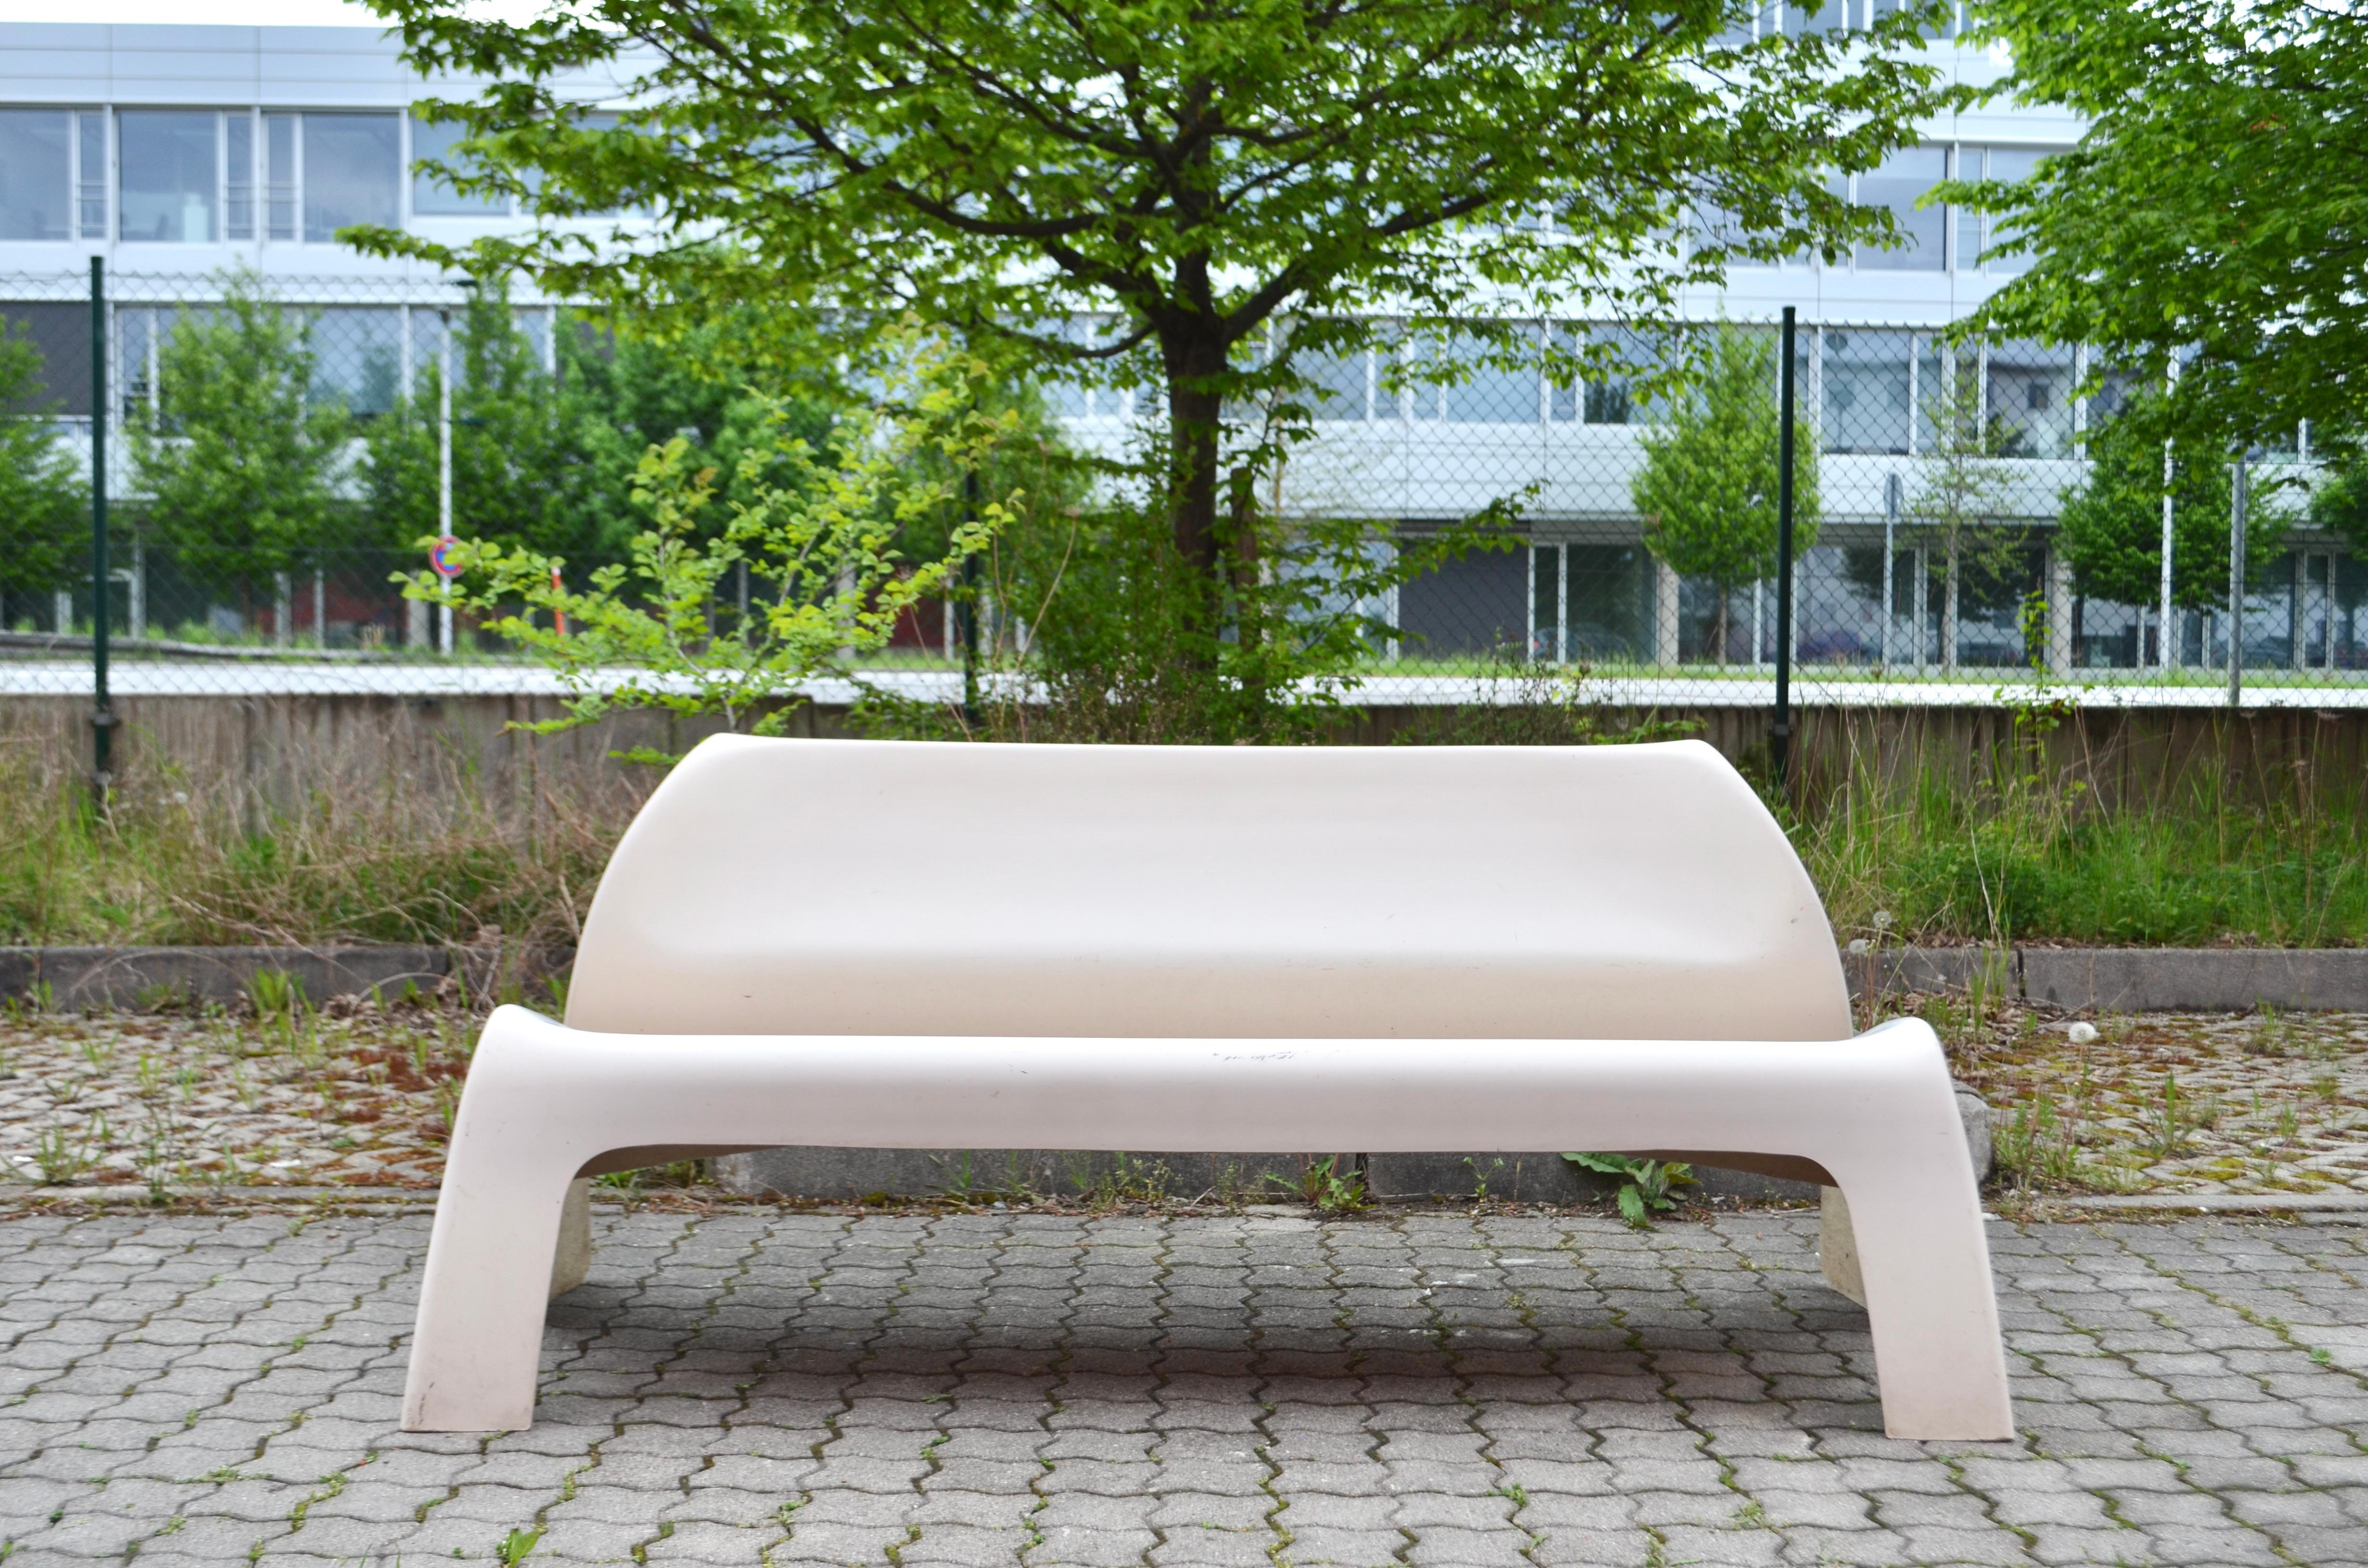 Dieses Objekt wurde von Luigi Colani 1968 mit dem Modellnamen Garden Party entworfen.
Es ist eine Bank oder ein Sofa für den Einsatz im Freien und auch für zu Hause.
Wie alle Colanis-Designs hat auch dieses ein organisches und dynamisches